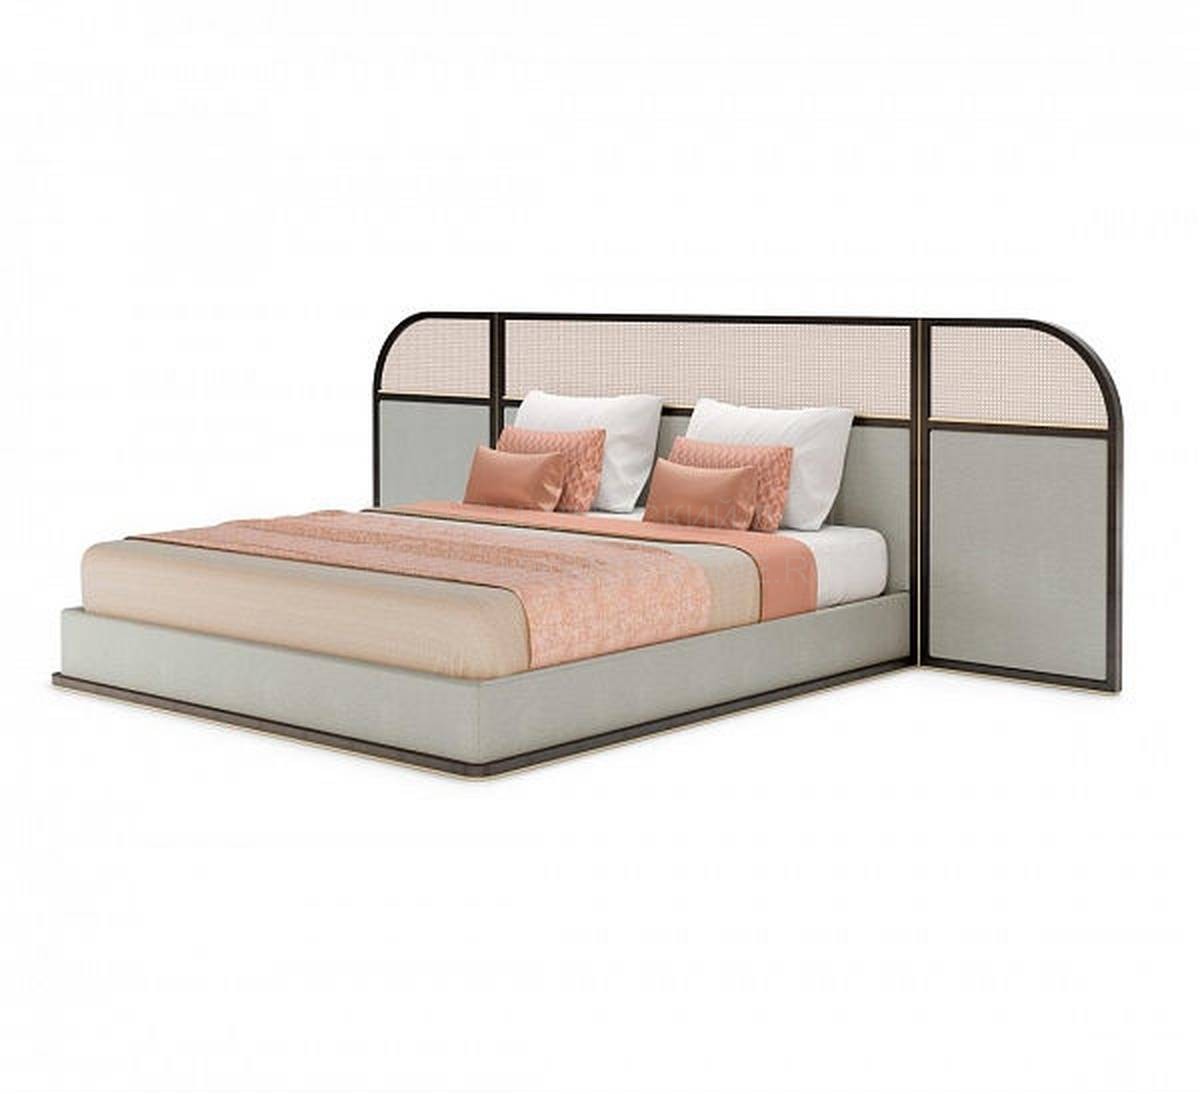 Кровать с комбинированным изголовьем Kent bed из Португалии фабрики FRATO